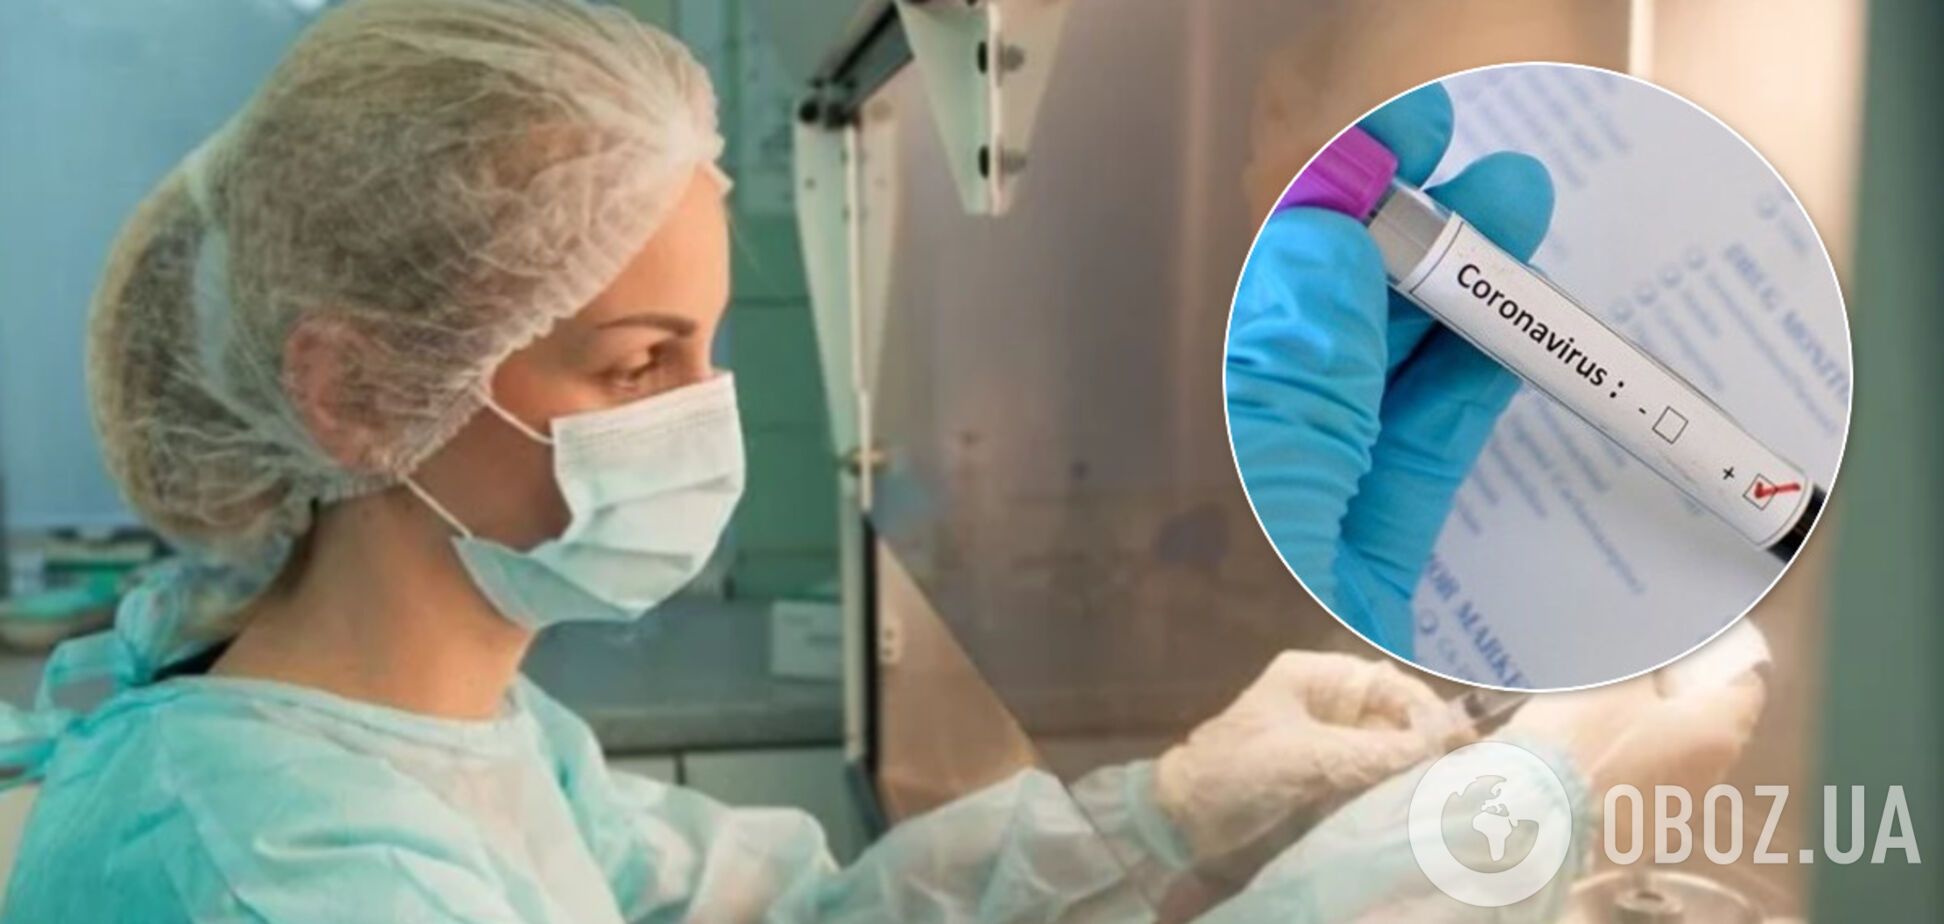 В МОЗ заявили о выздоровлении 8 украинцев от коронавируса, но ошиблись